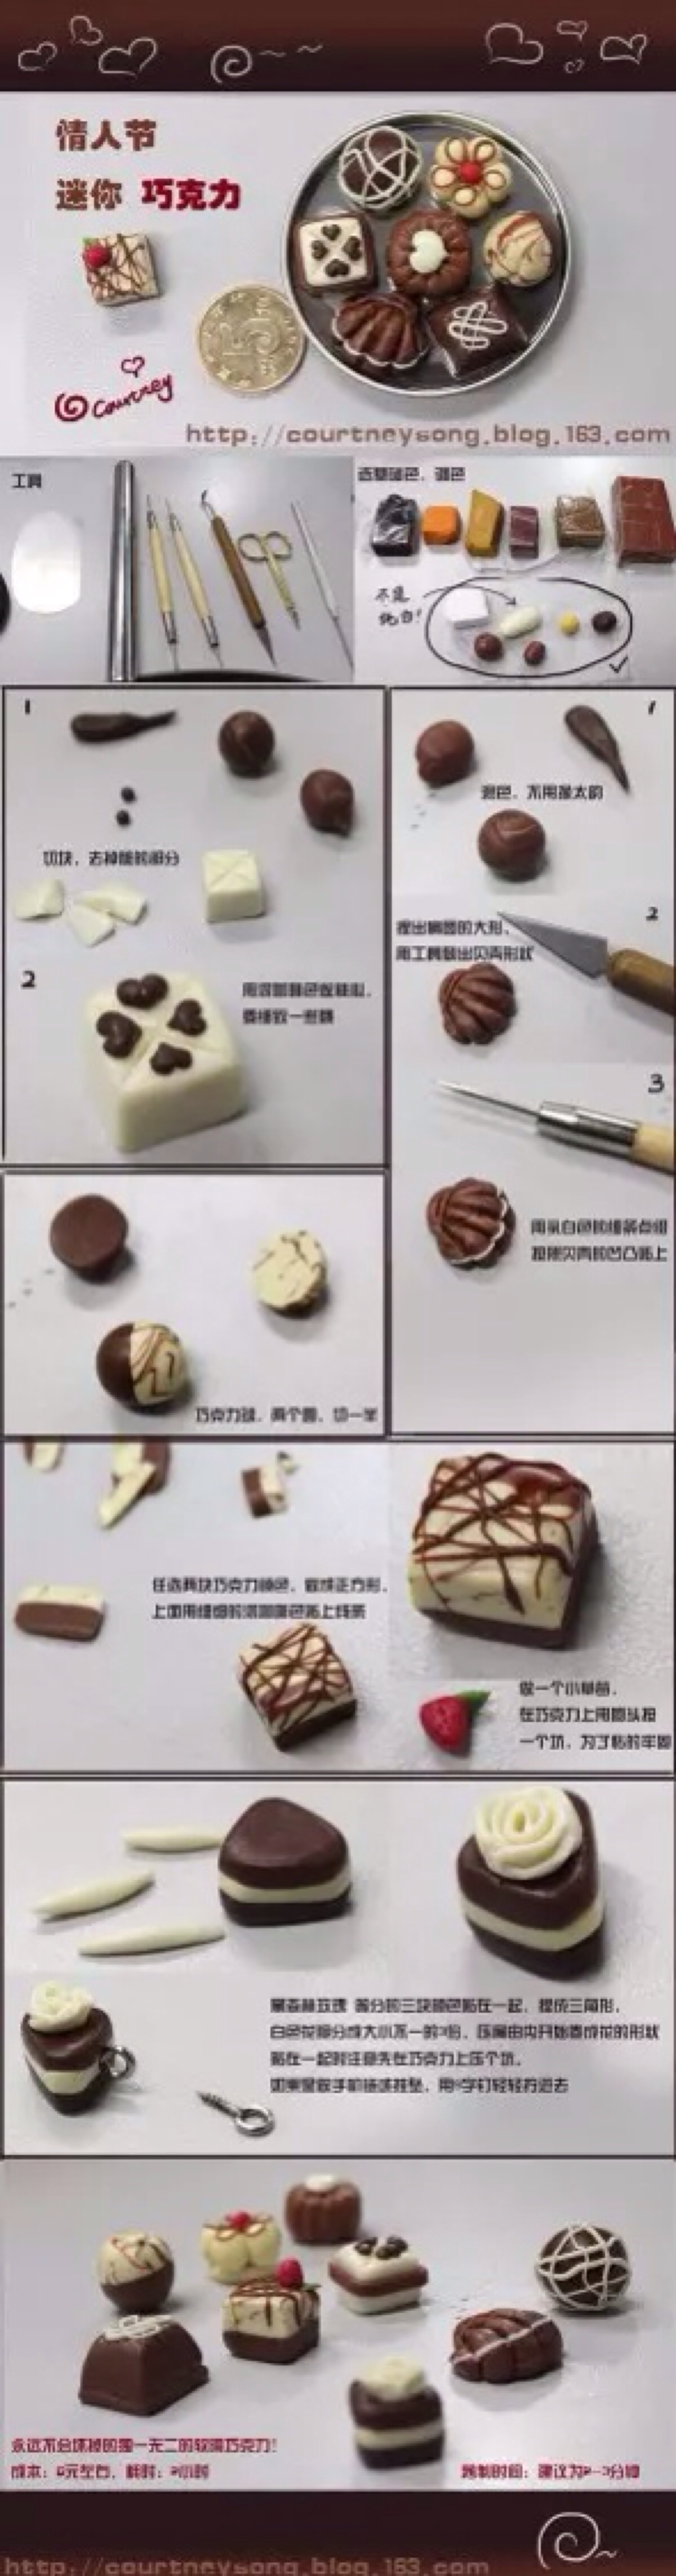 用粘土做甜品图解图片